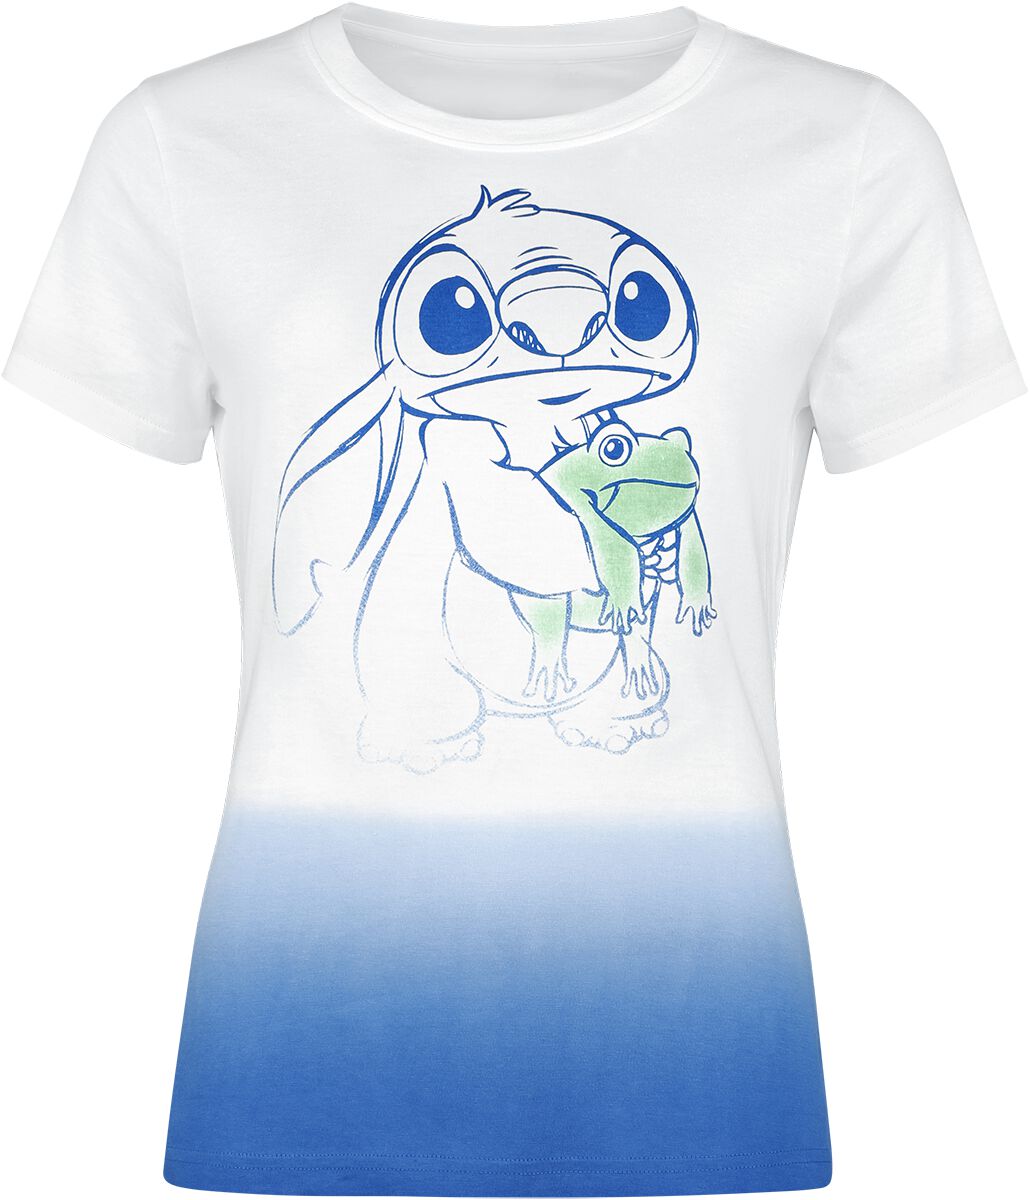 Lilo & Stitch Frog Friend T-Shirt multicolor in XL